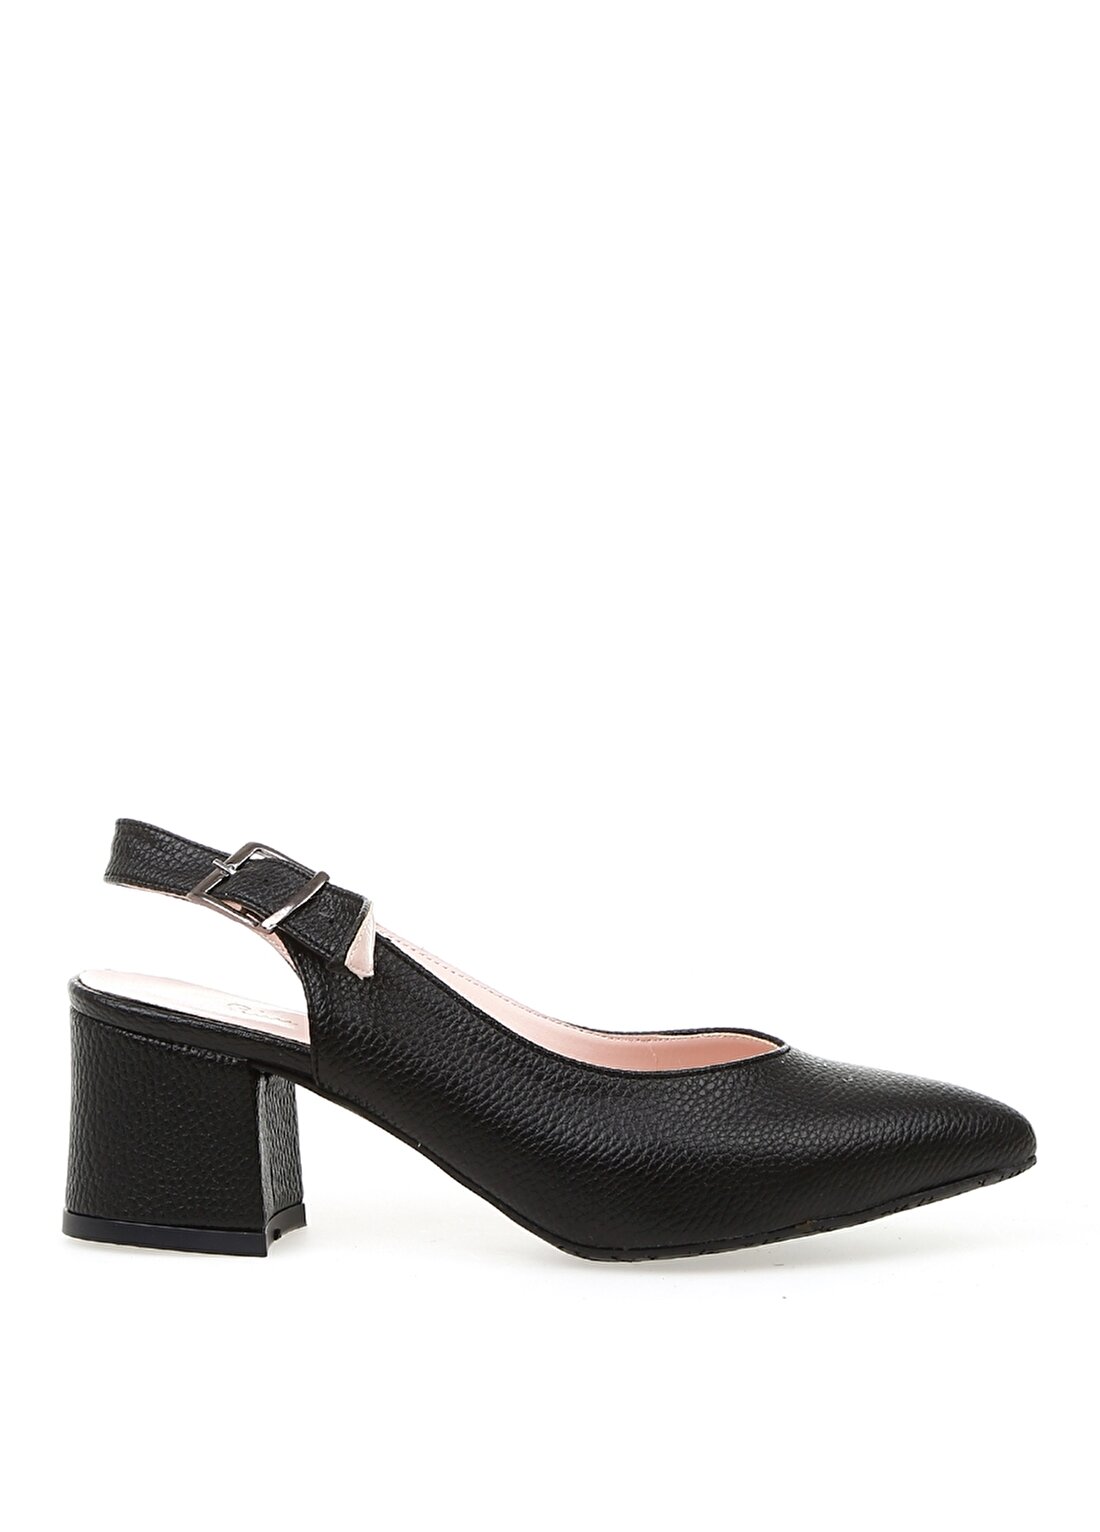 Pierre Cardin 54060 Yazlık Siyah Kadın Topuklu Ayakkabı